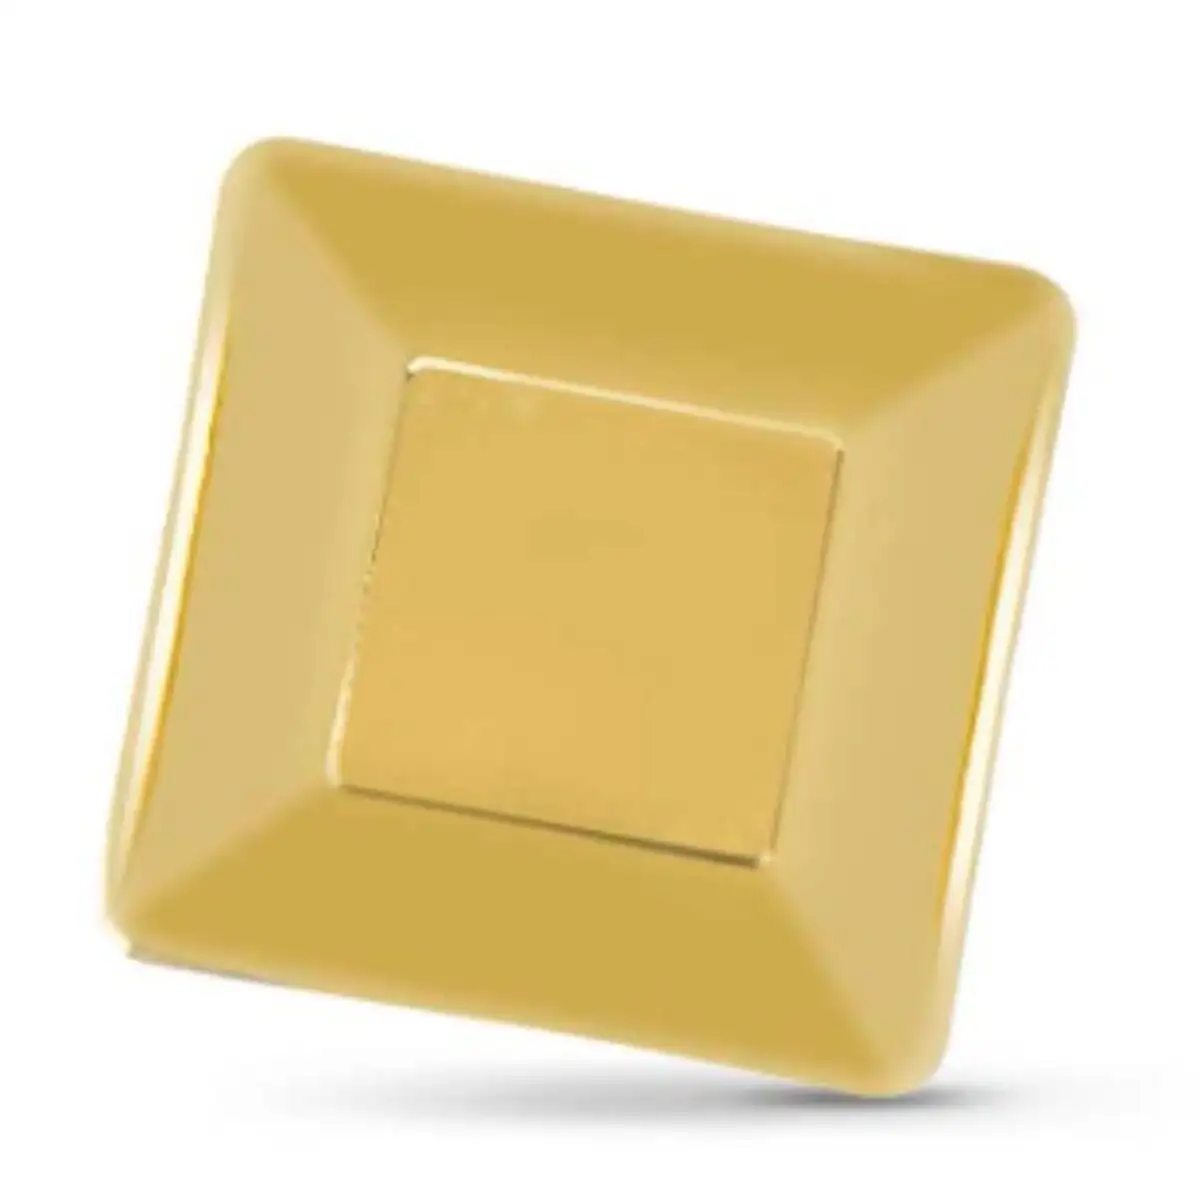 Service de vaisselle algon carre dore carton produits a usage unique 19 x 19 x 1 cm 12 unites_3548. DIAYTAR SENEGAL - Là où Chaque Achat a du Sens. Explorez notre gamme et choisissez des produits qui racontent une histoire, votre histoire.